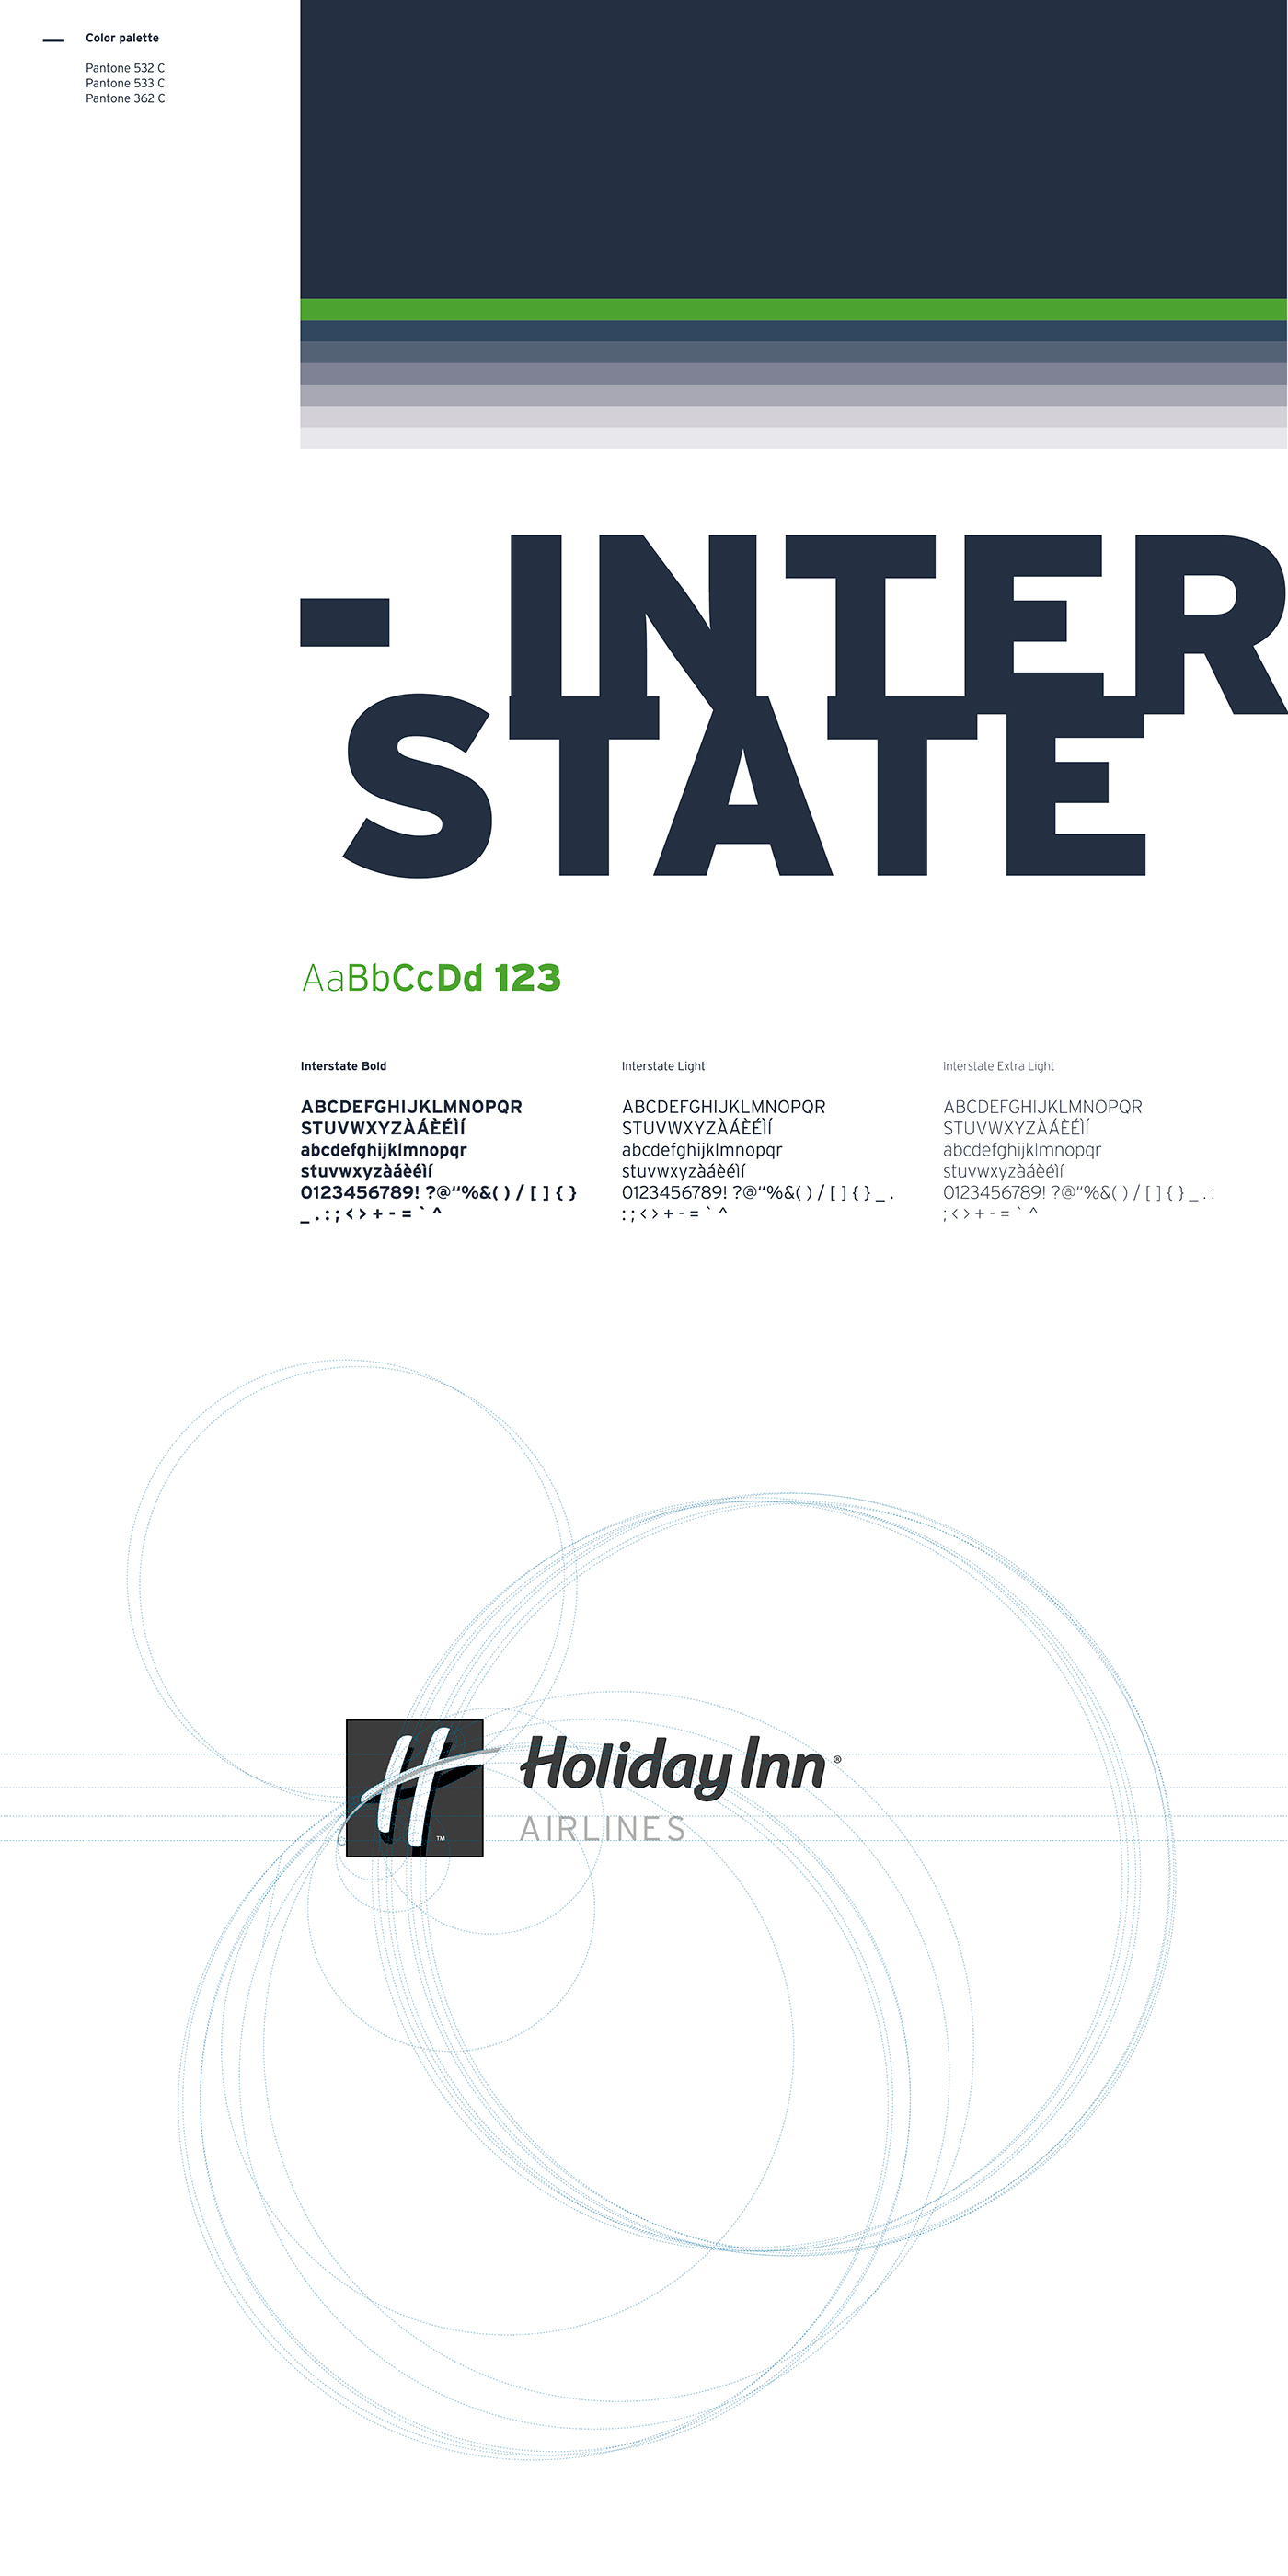 logo corporate app design Holiday Inn rebranding